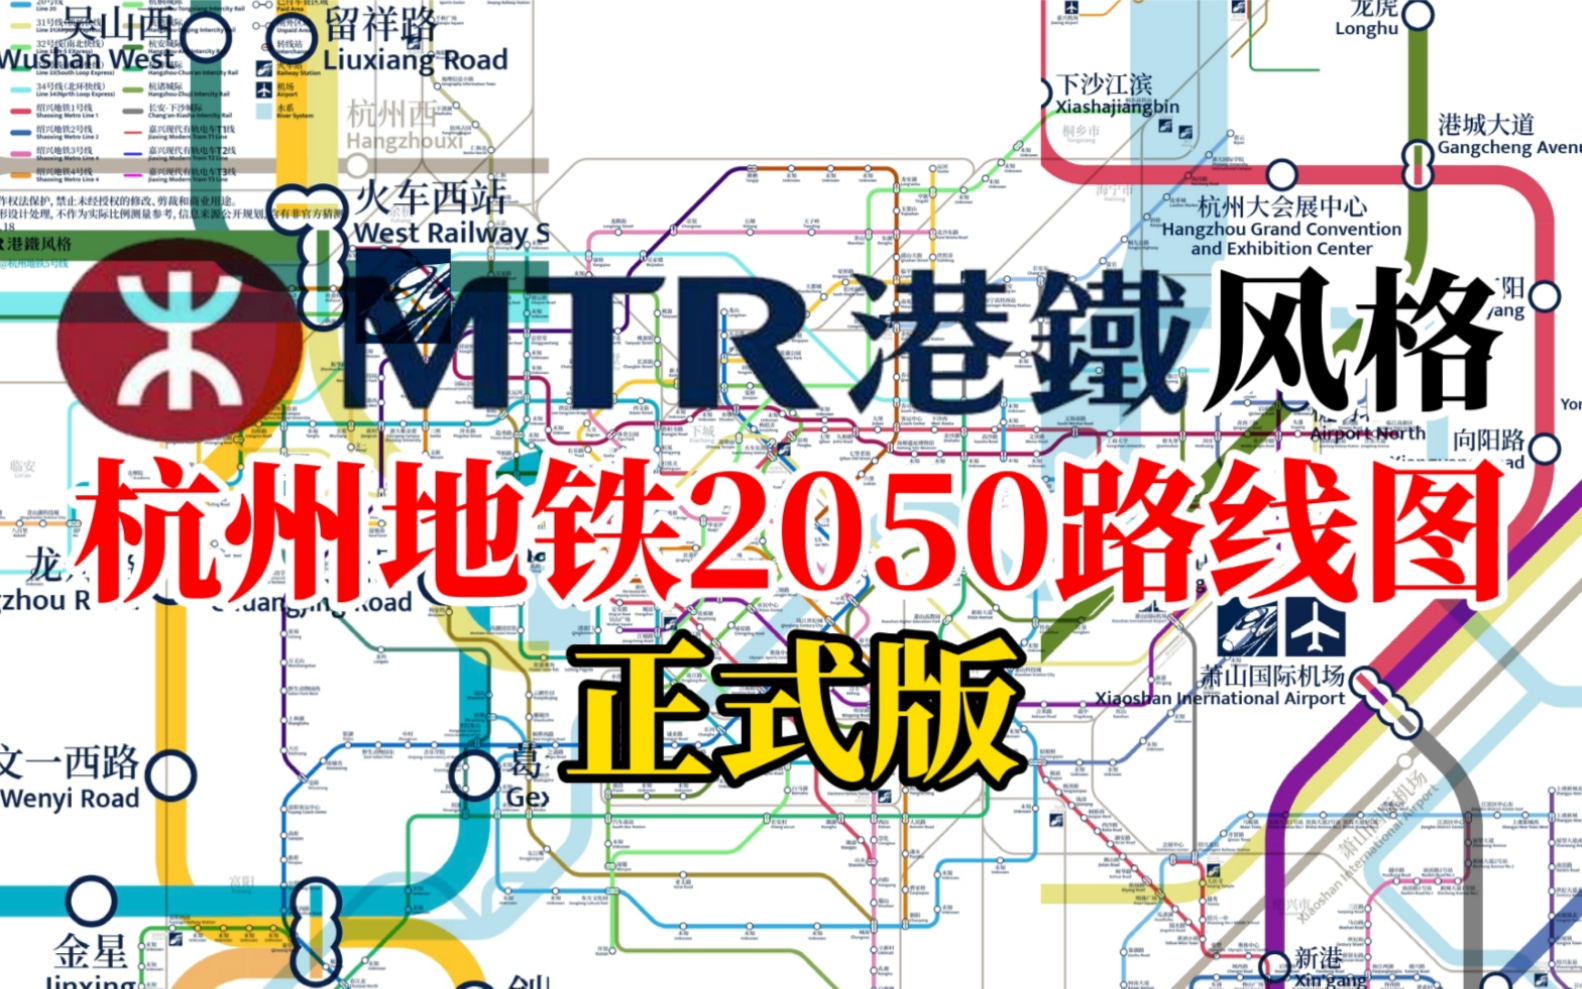 【杭州地铁】杭州西站5线换乘?mtr港铁风格2050路线图